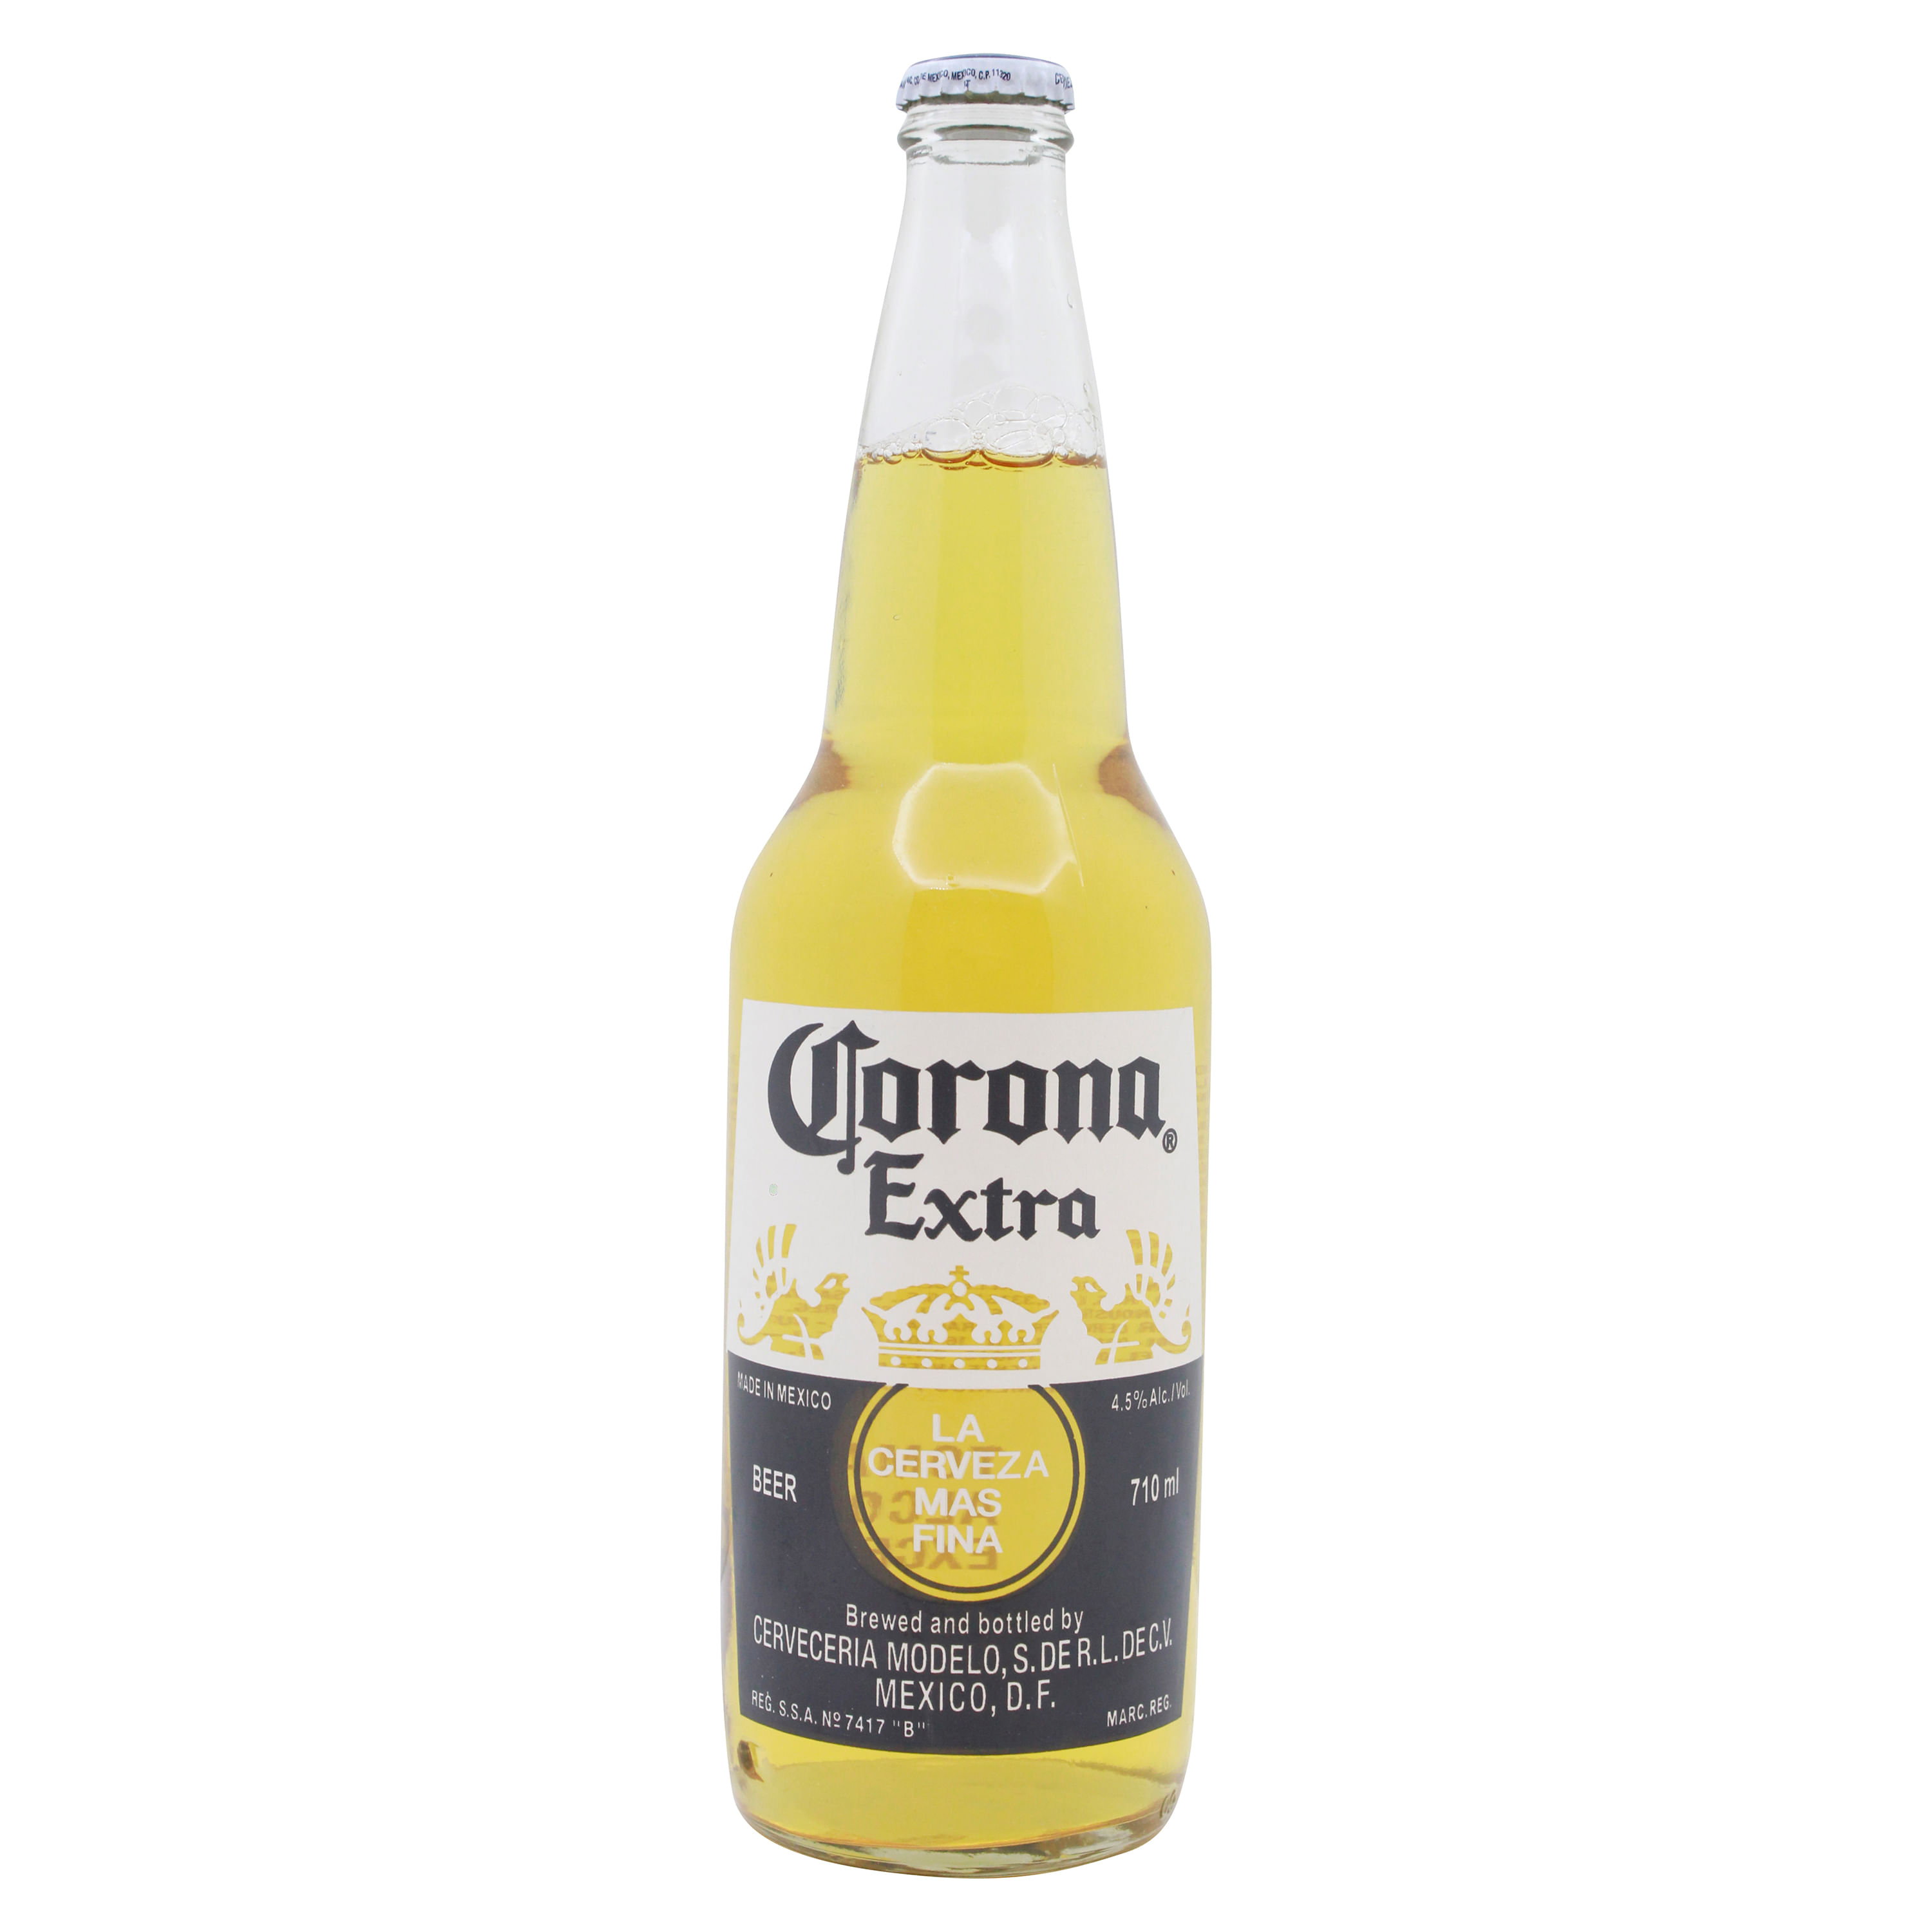 Cerveza-Marca-Corona-Extra-710ml-1-34428